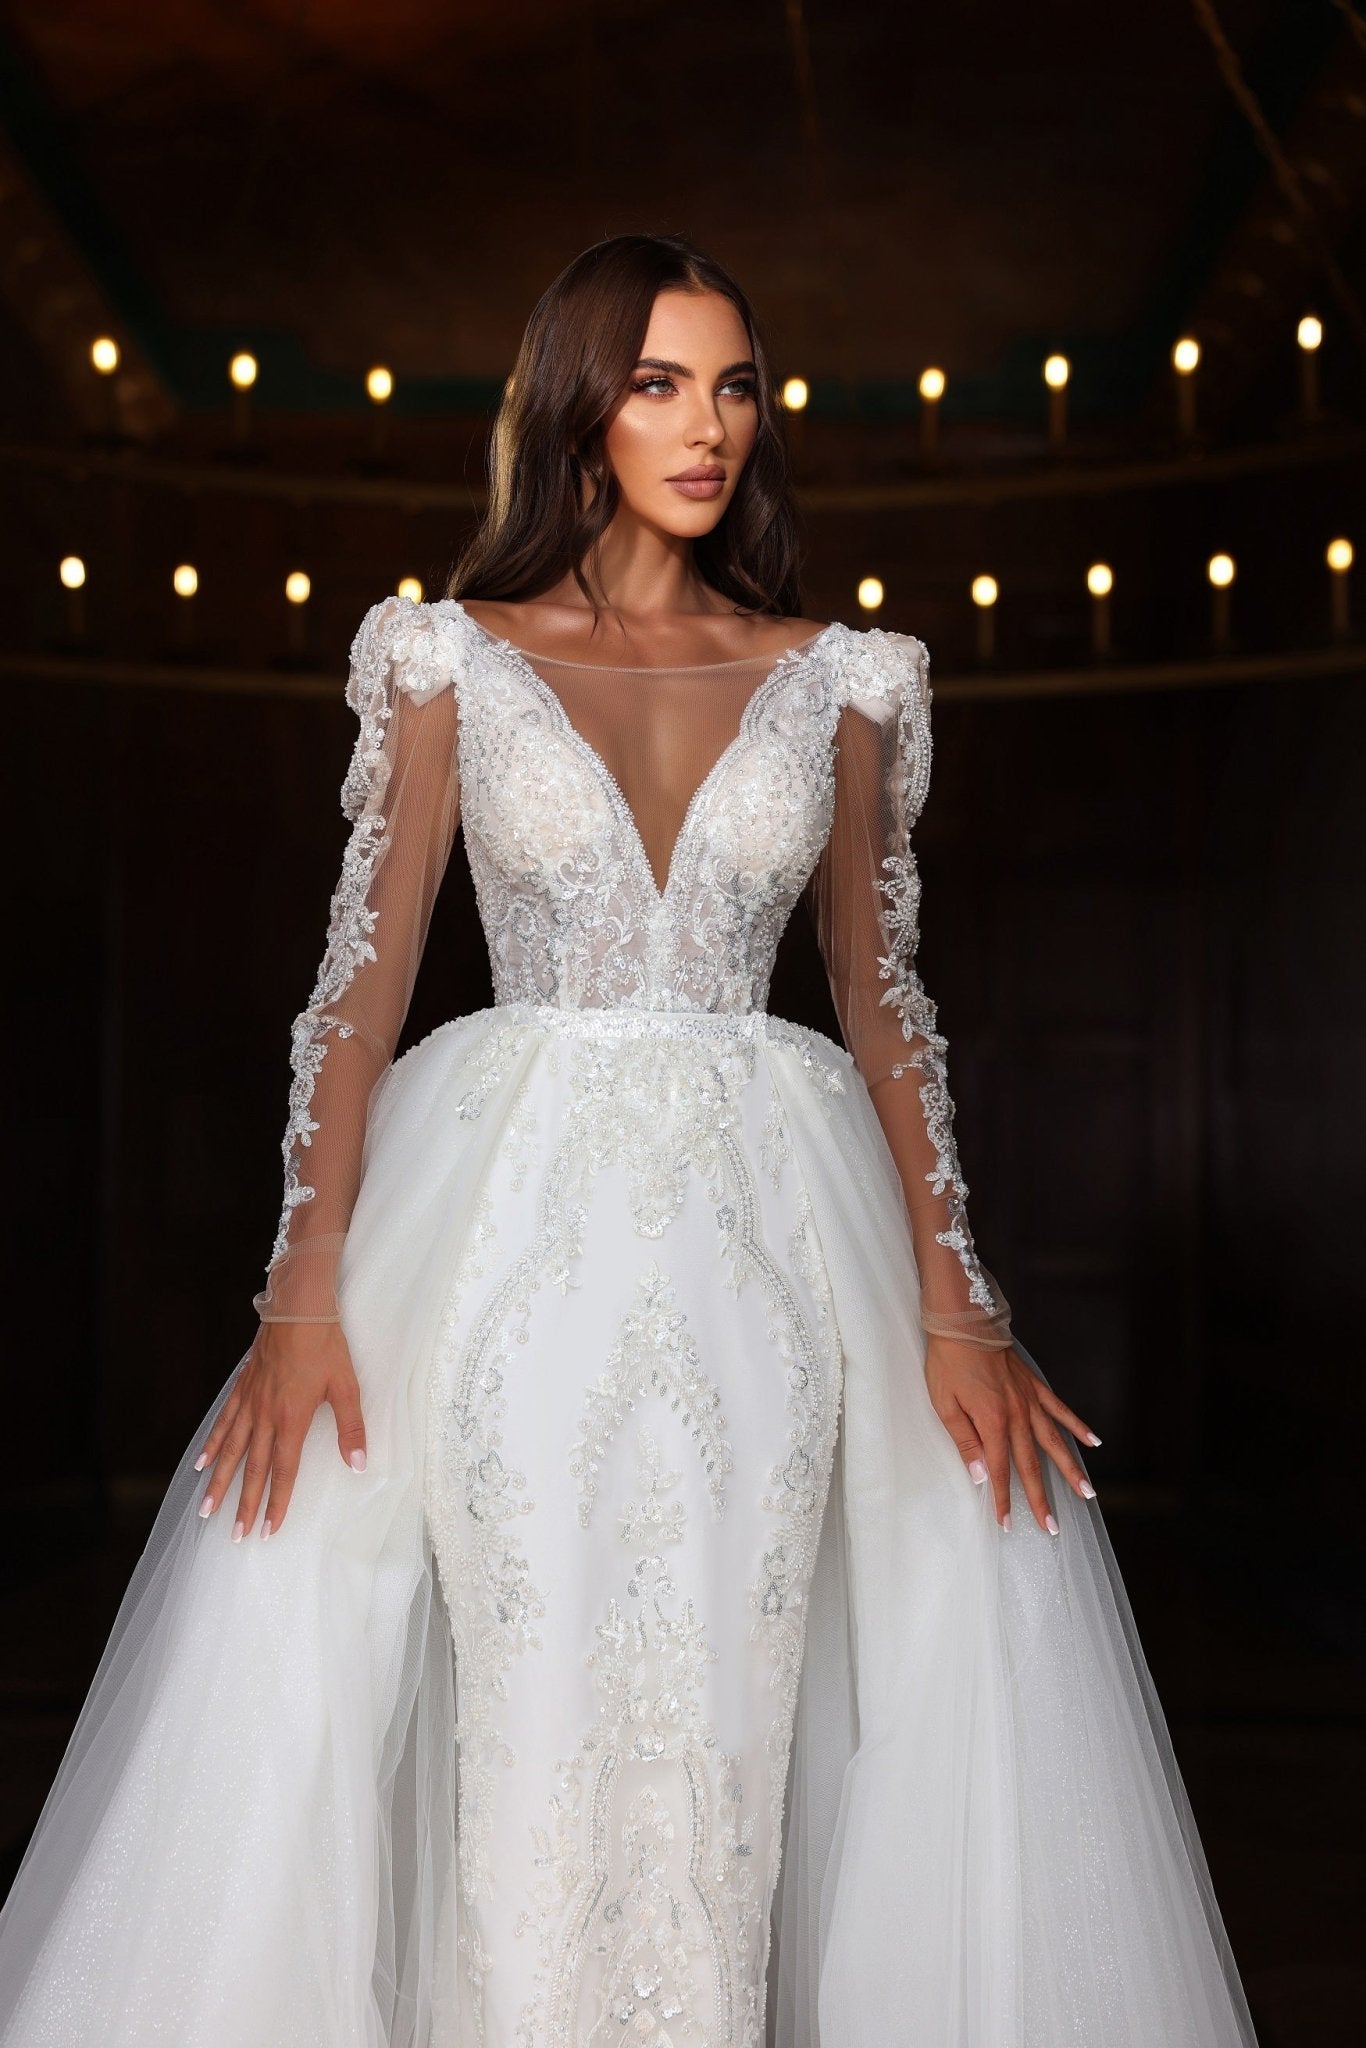 Luxurious V-Neck Wedding Dress with Lace Embellishments and Tulle Skirt Plus Size - WonderlandByLilian